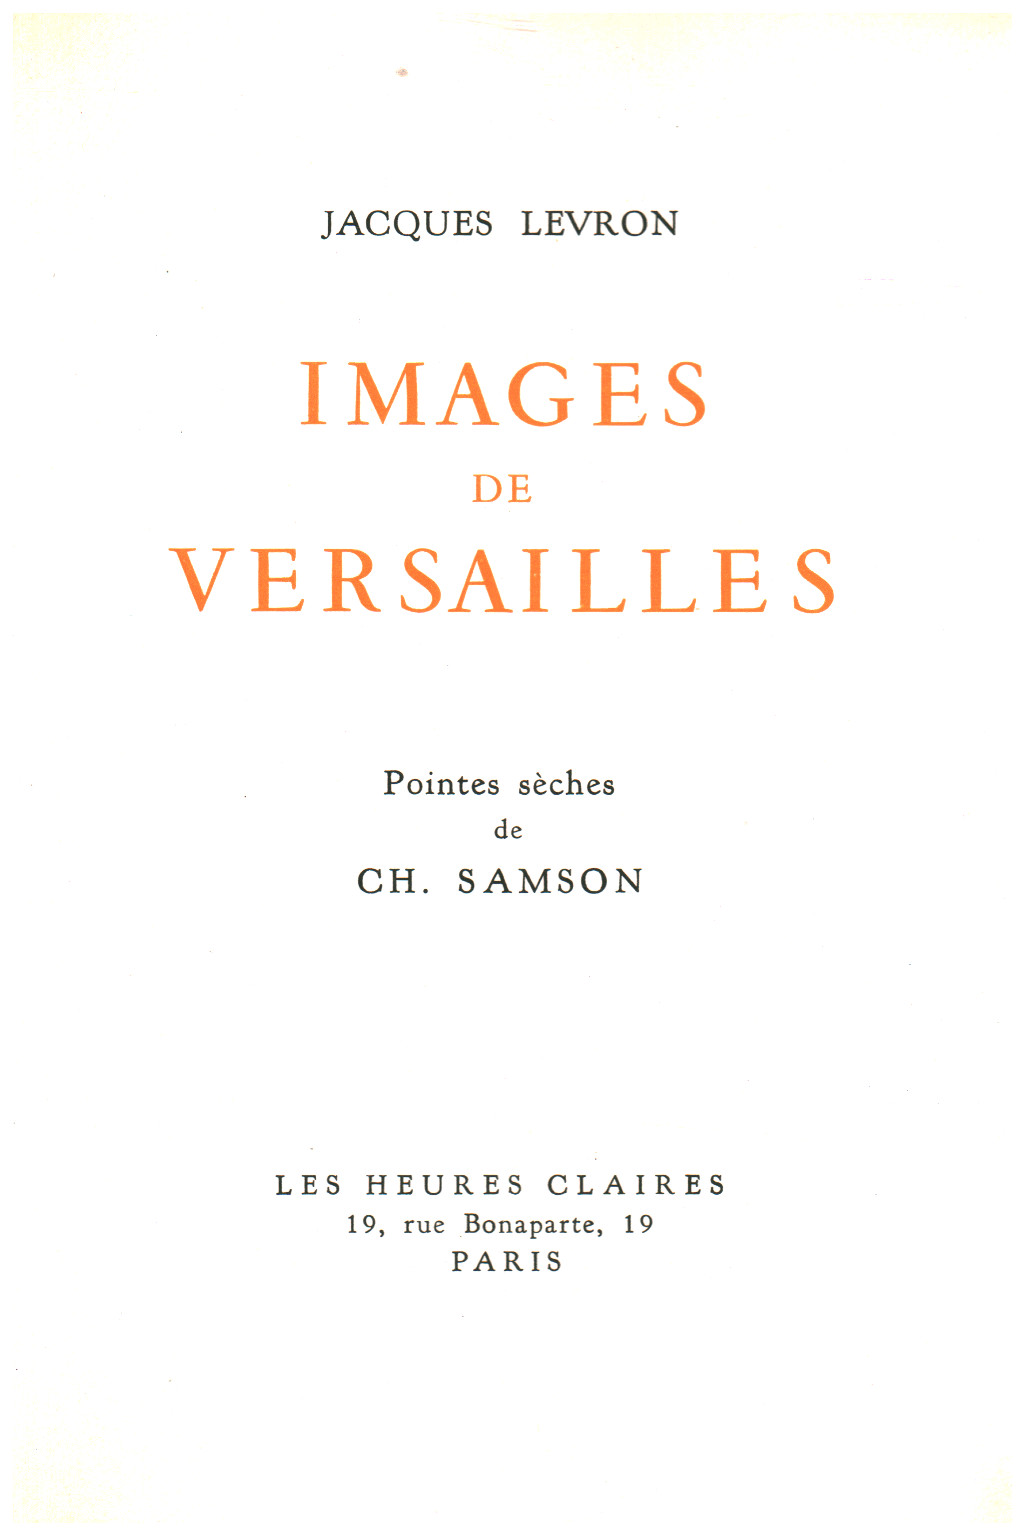 Images de Versailles, s.zu.